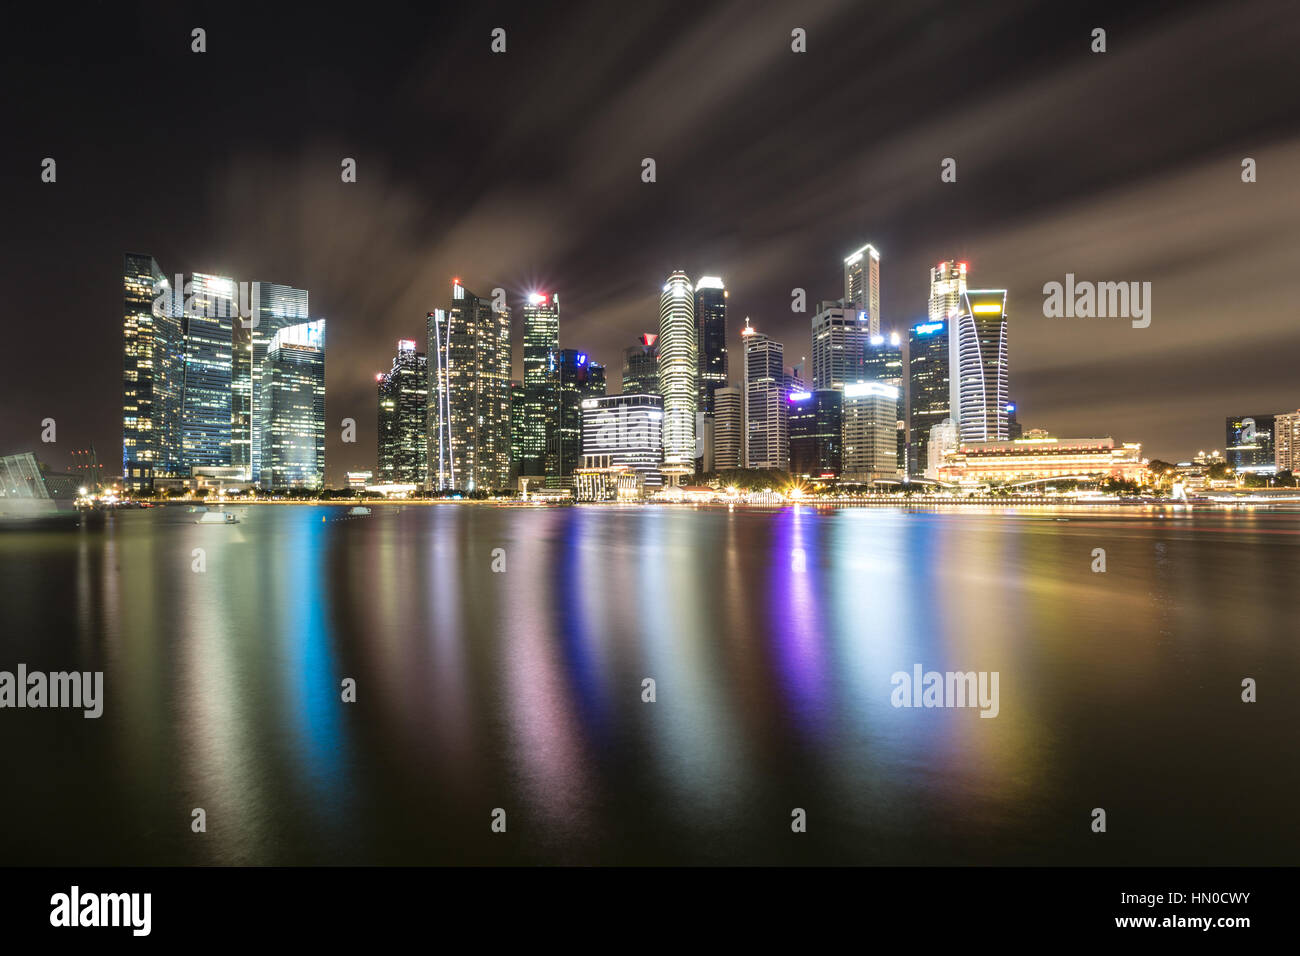 Eine Reflexion von den Wolkenkratzern der Geschäft Bezirk Skyline von Singapur in die Marina Bay von der Uferpromenade entfernt. Aufnahme mit langer Belichtungszeit zu smo Stockfoto